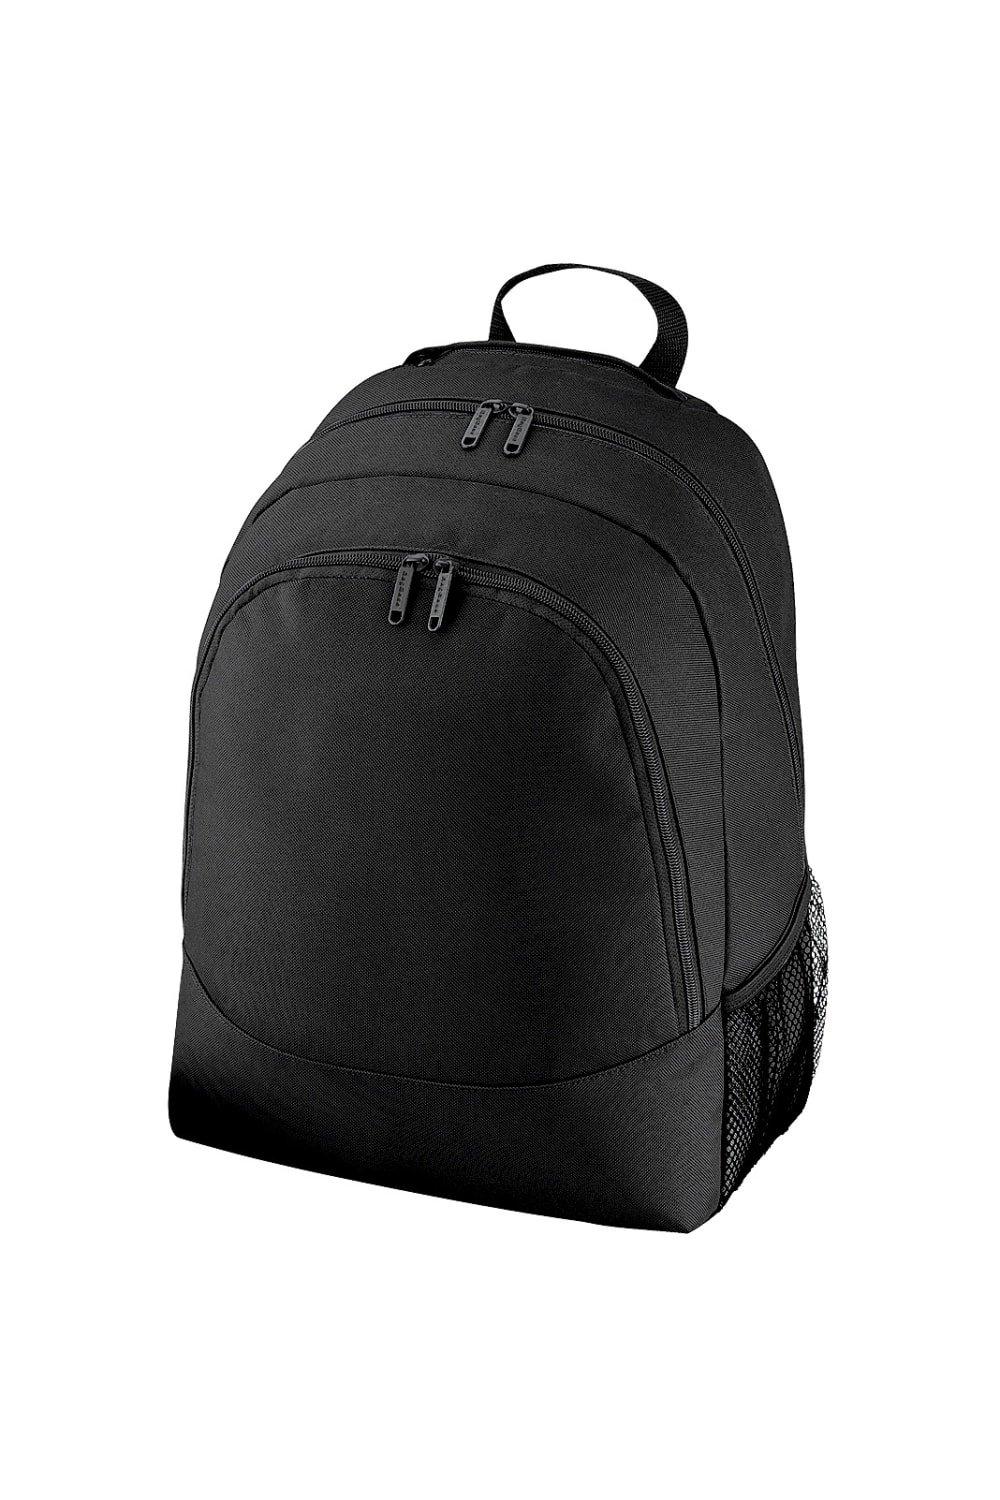 Универсальный многоцелевой рюкзак/рюкзак/сумка (18 литров) Bagbase, черный чехол задняя панель накладка бампер mypads mp3 для huawei honor 6 plus pe ul00 tl20 tl10 cl00 75 7 противоударный